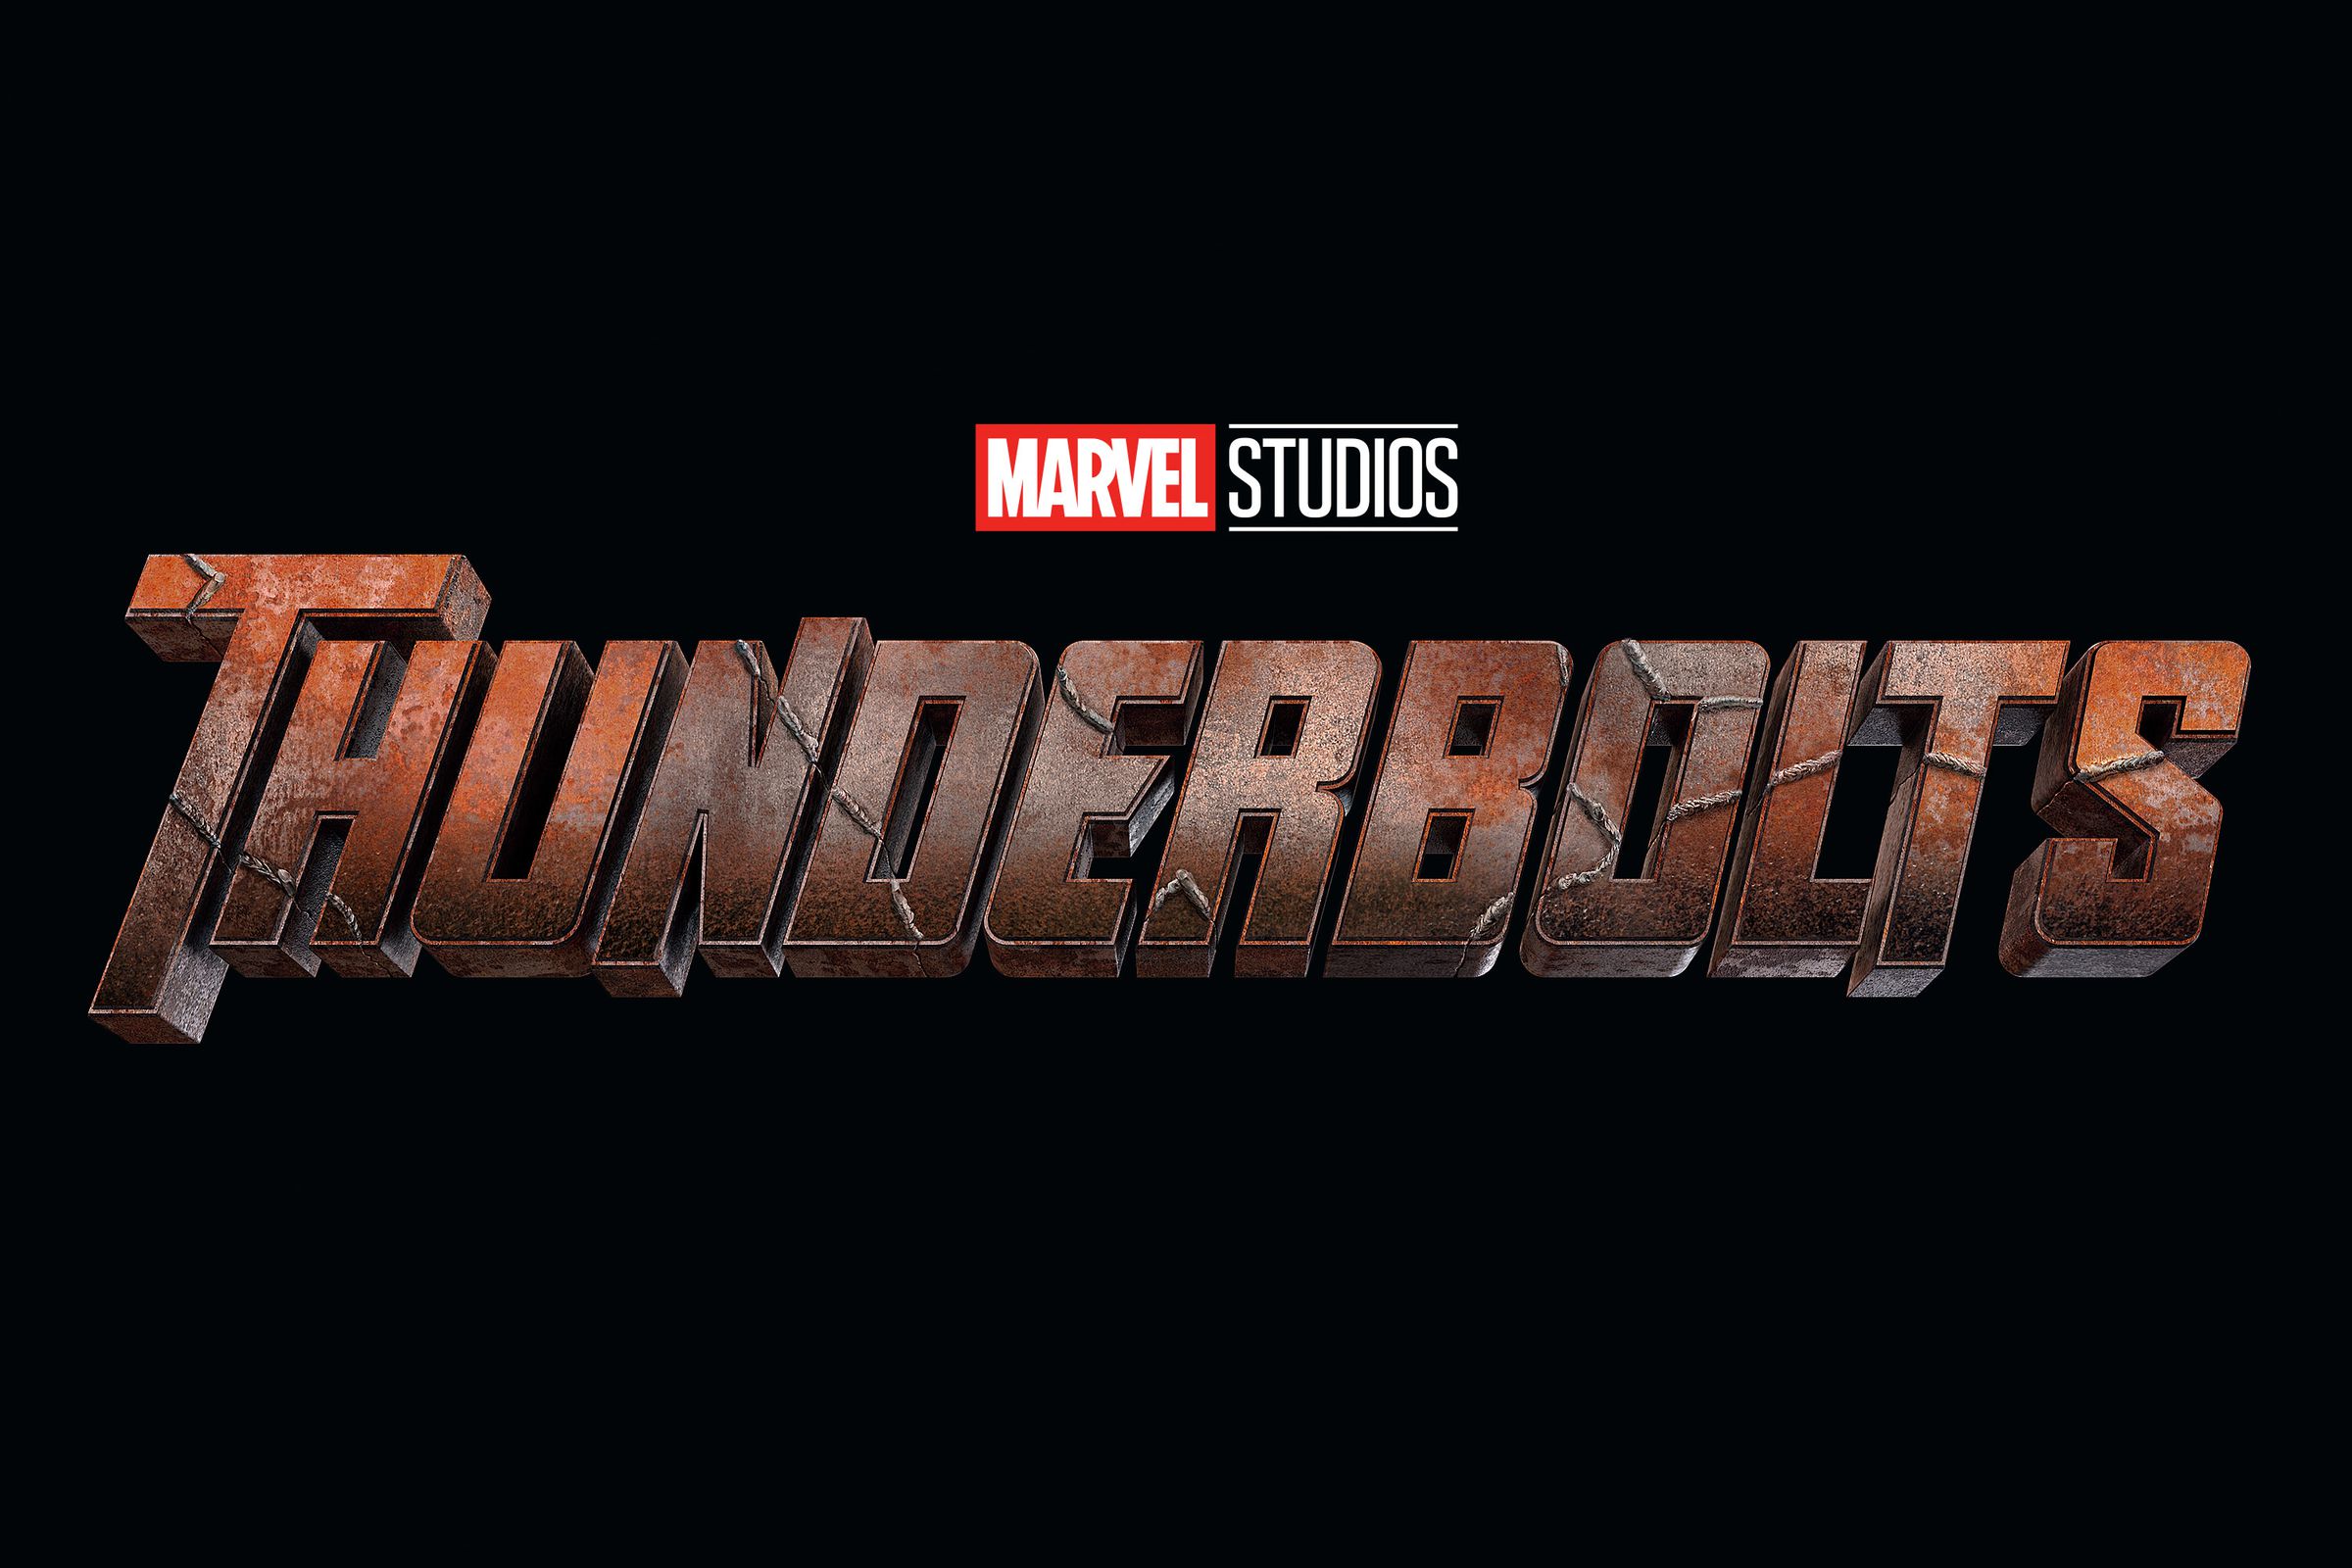 Marvel Studios Thunderbolts logo.